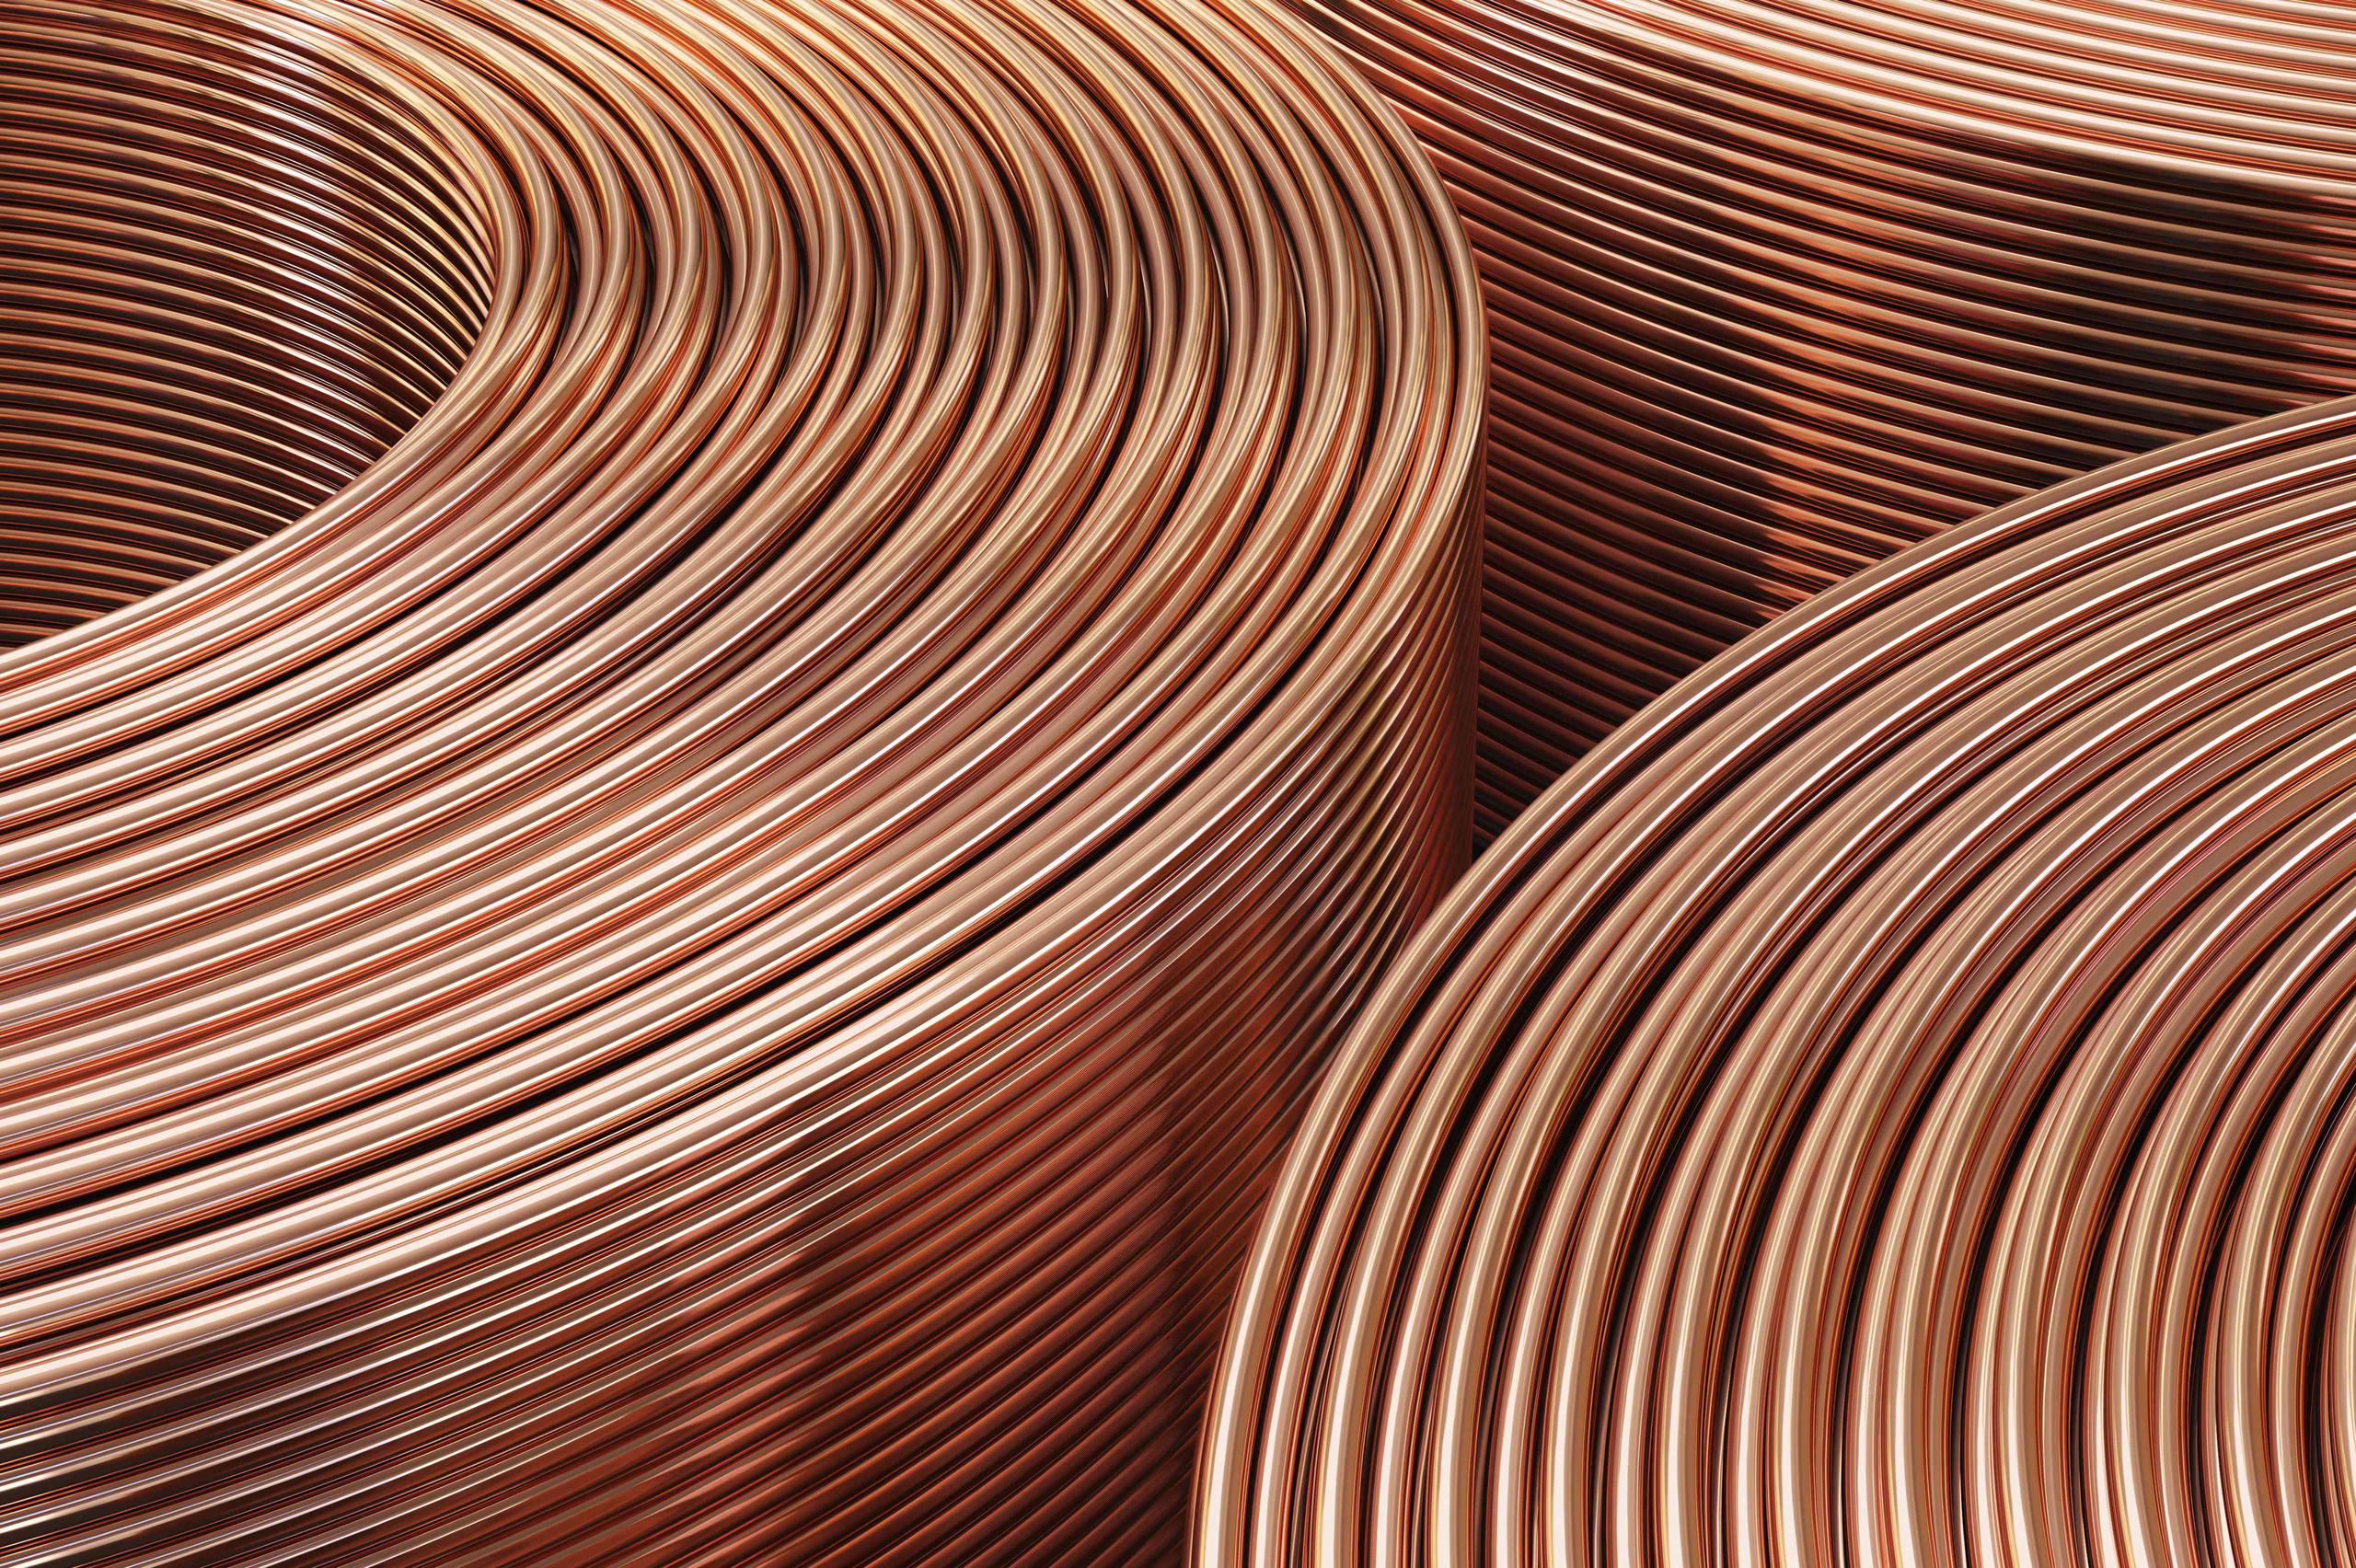 La imagen muestra rollos de cobre procesados en una fábrica.